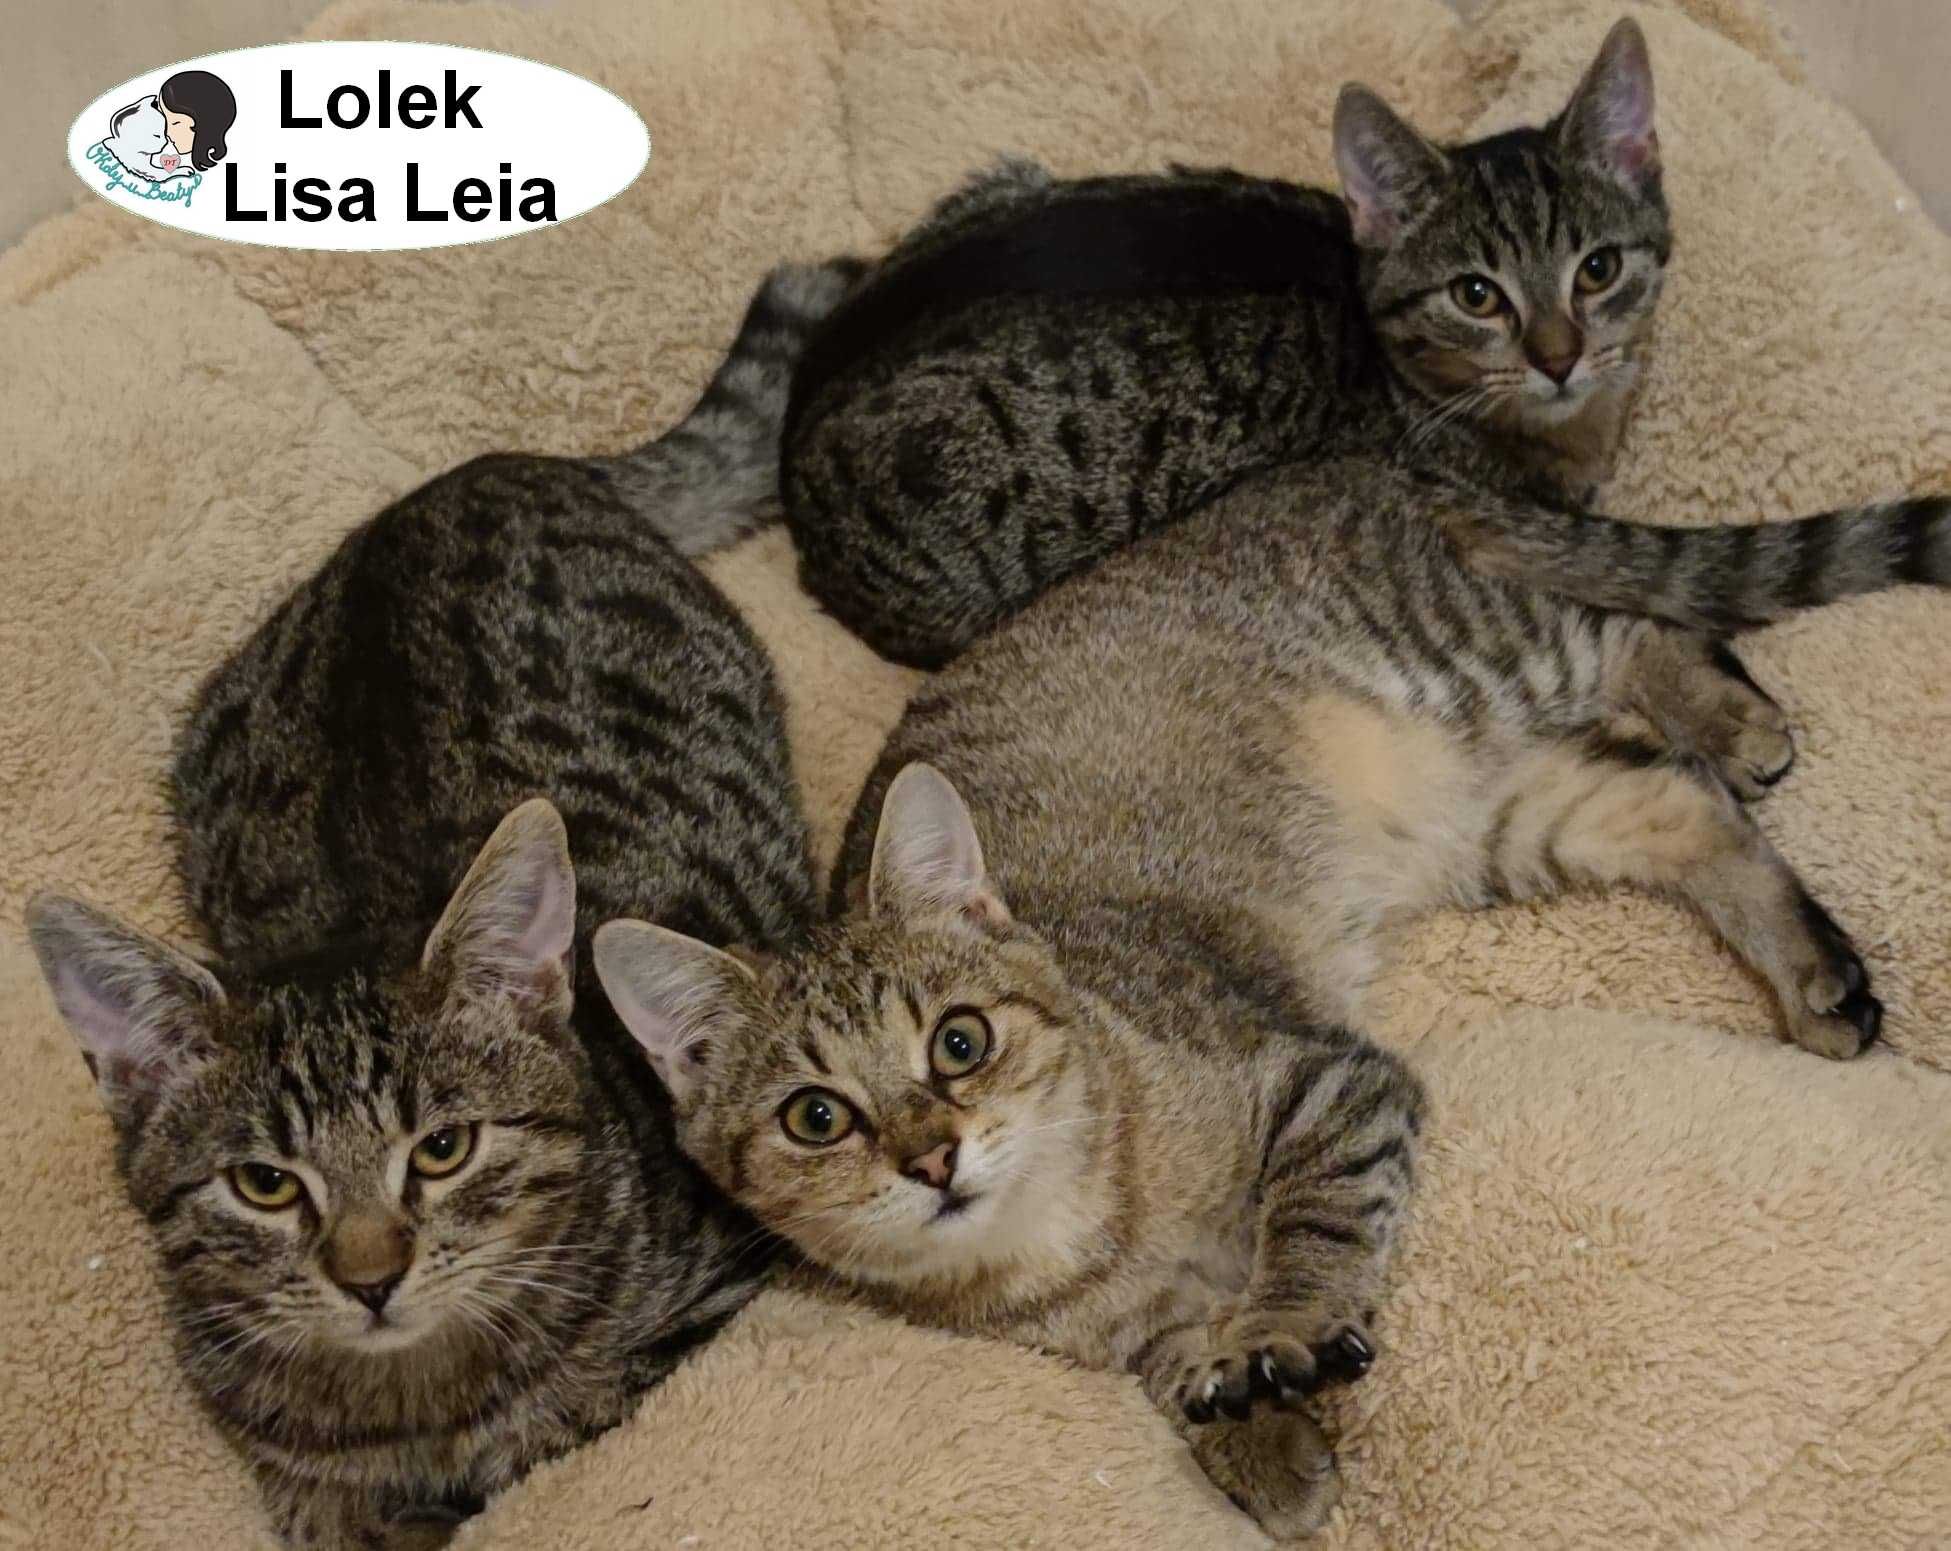 Lisa, Lolek i Leia - buraski do pokochania około 10 miesięcy